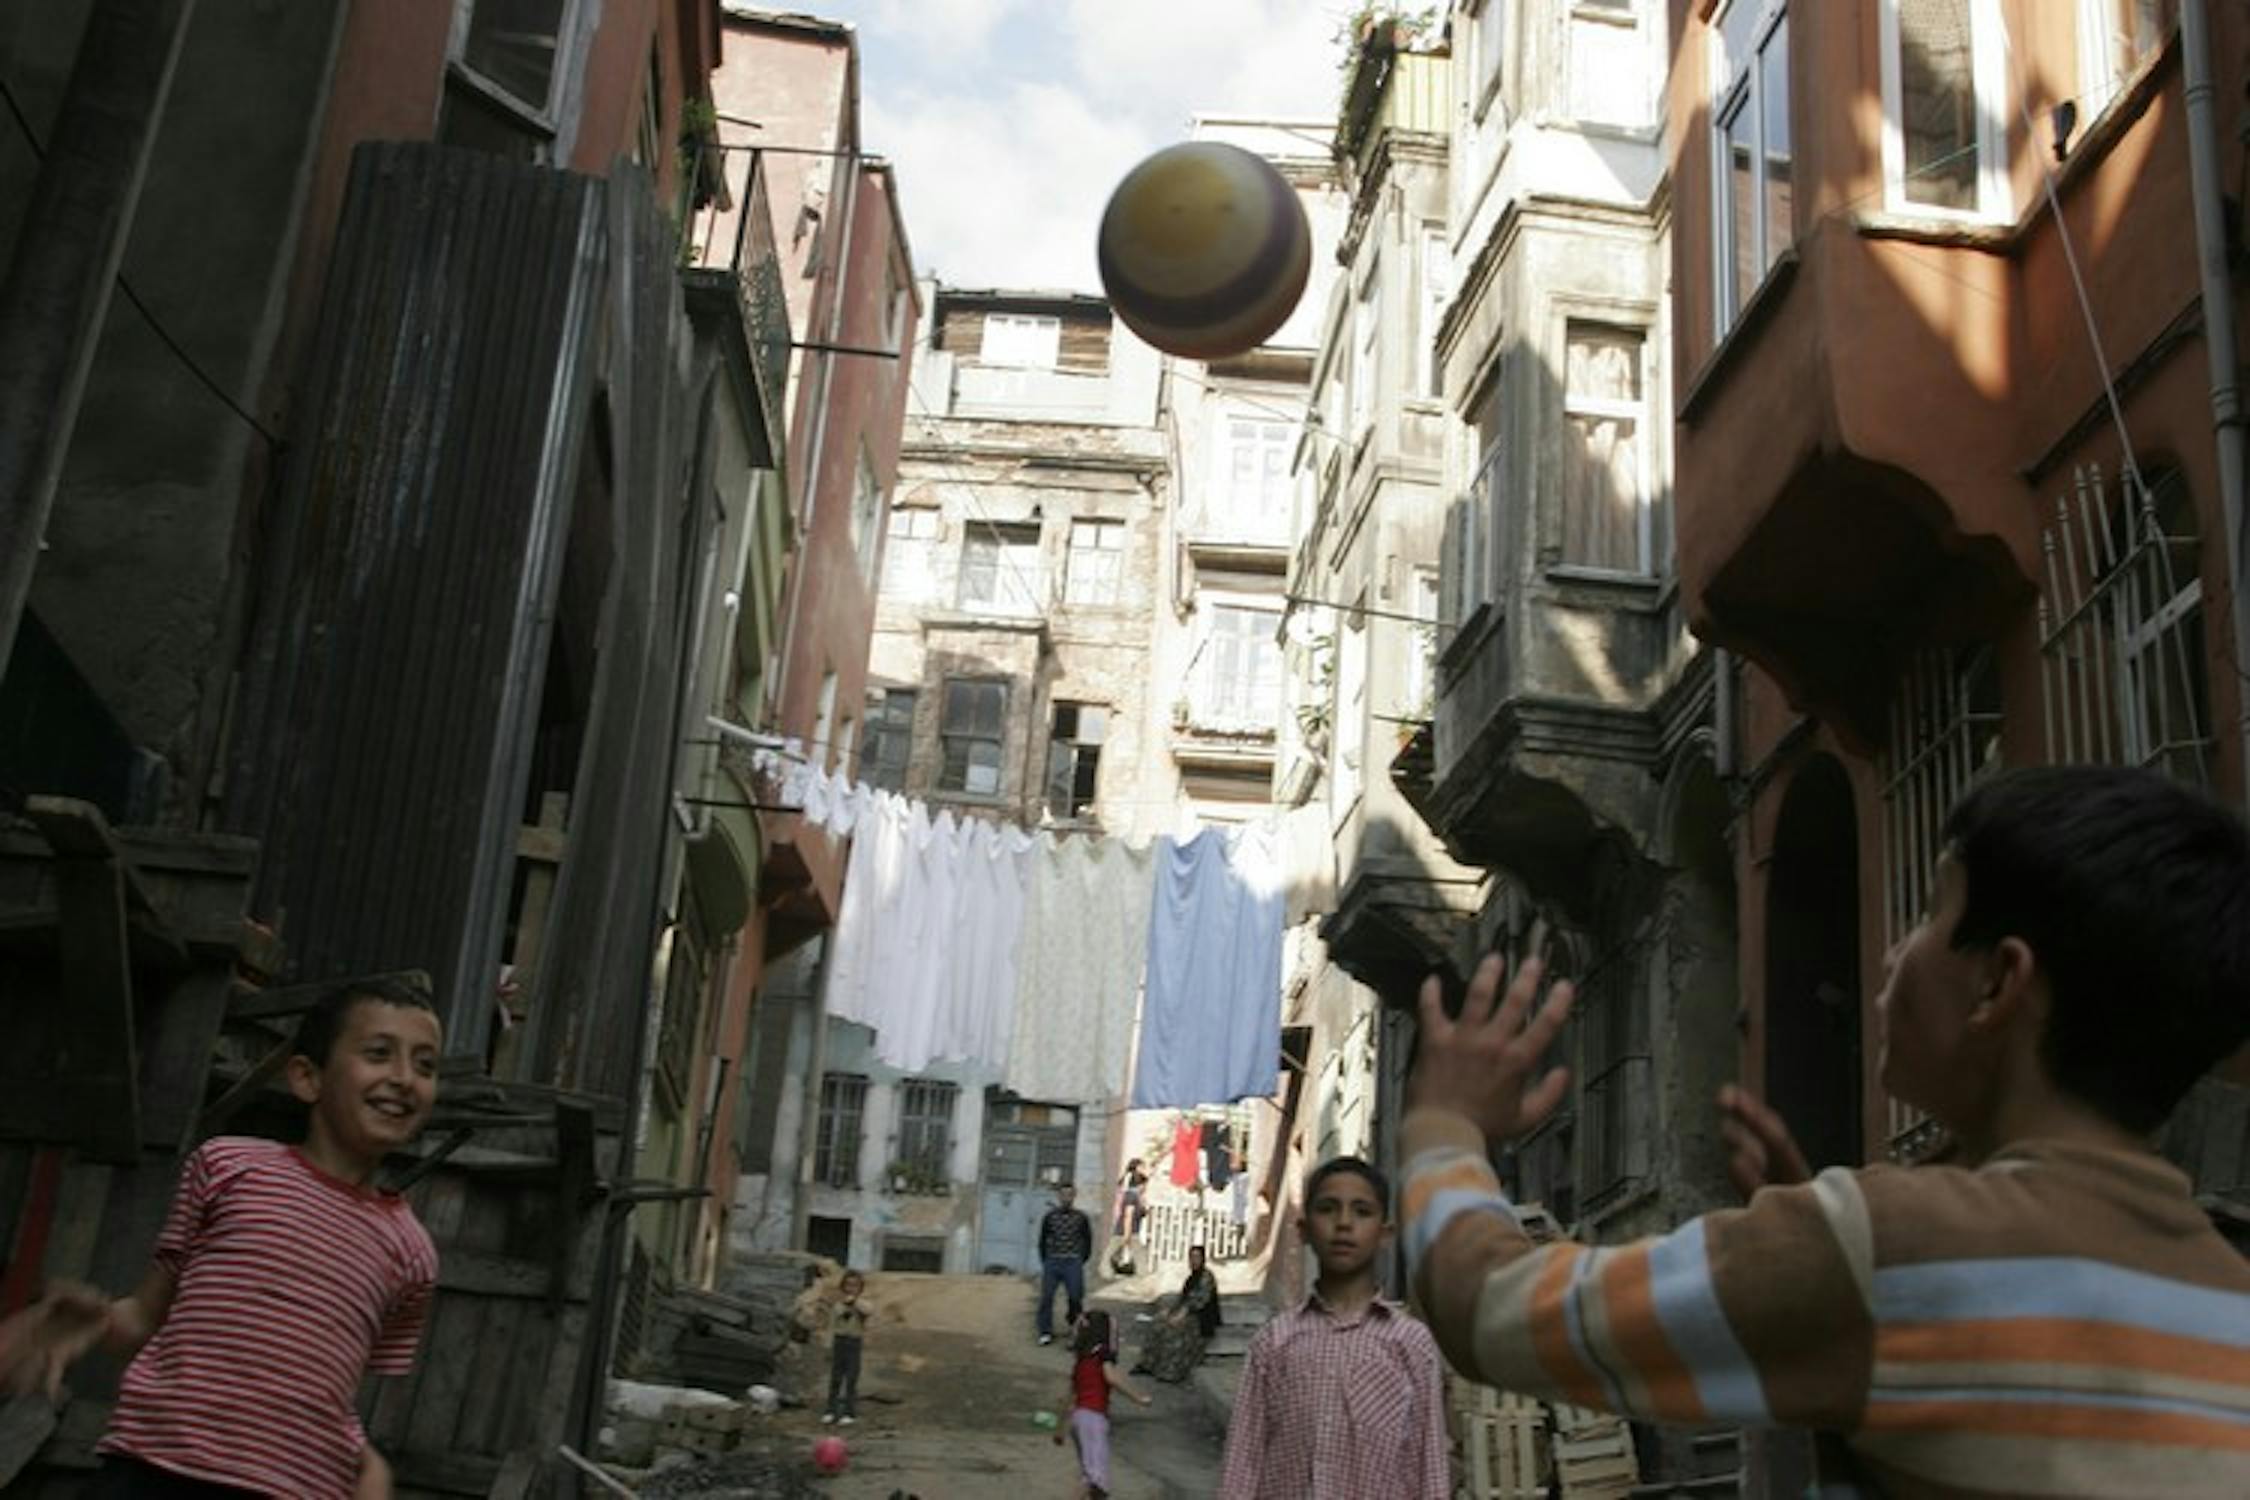 Ragazzini giocano in una strada di Tarlabasi, sobborgo povero di Istanbul: in Turchia è ancora rilevante il numero di minori (soprattutto bambine) che non frequenta la scuola primaria - ©UNICEF/NYHQ2005-1185/LeMoyne